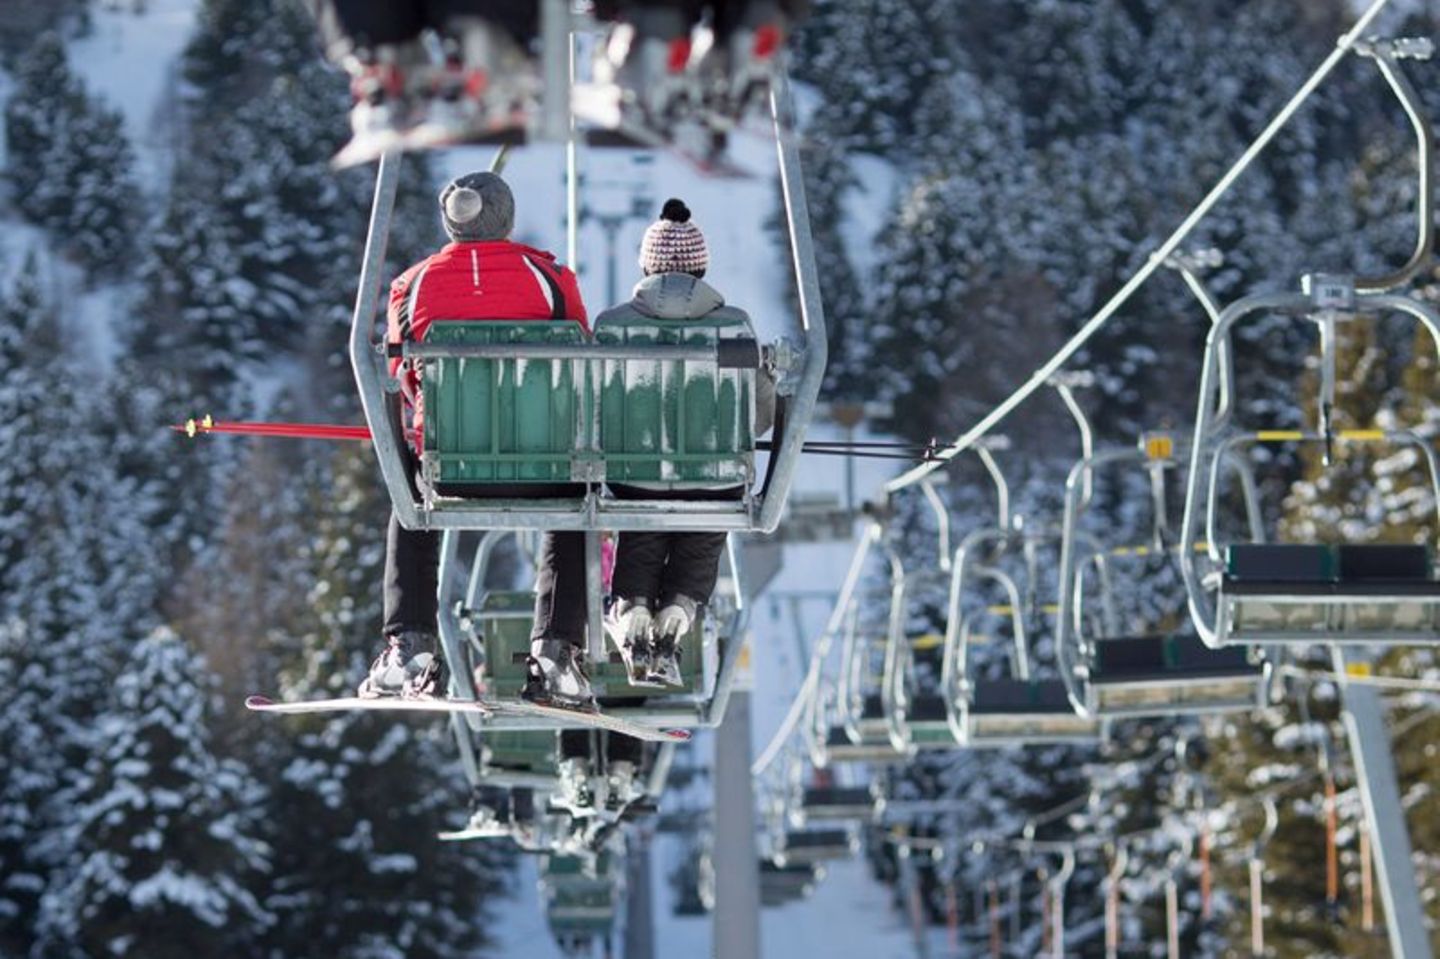 Skiurlauber in einem Sessellift in Österreich